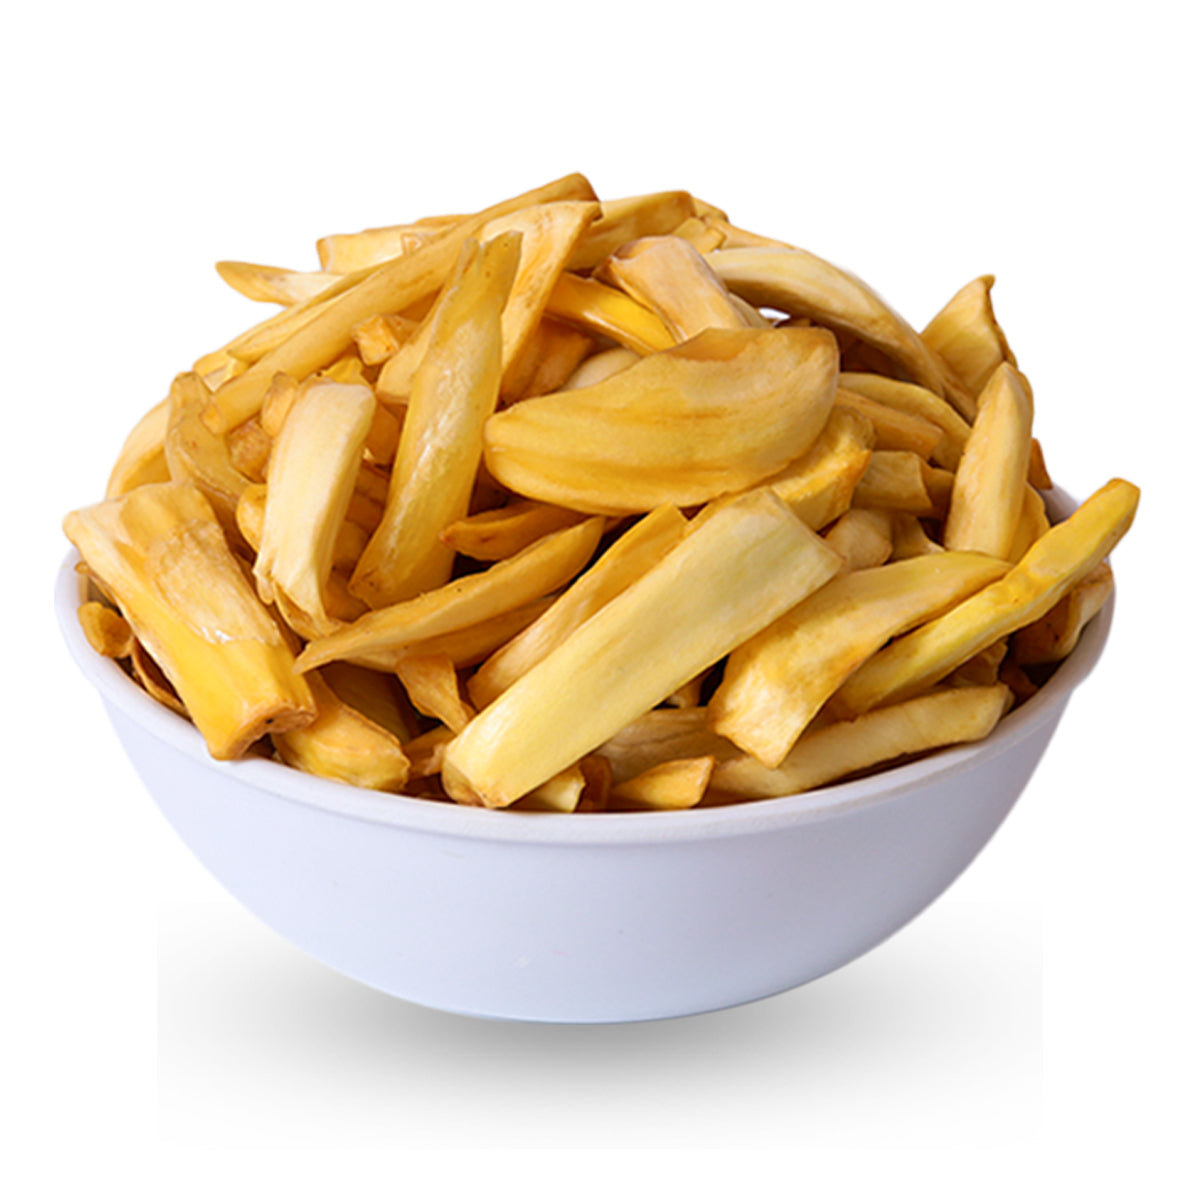 Kerala Chips Combo - Banana Chips (250g), Masala Banana Chips (250g), Jaggery Coated Banana Chips (250g), Jackfruit Chips (250g) - 1kg